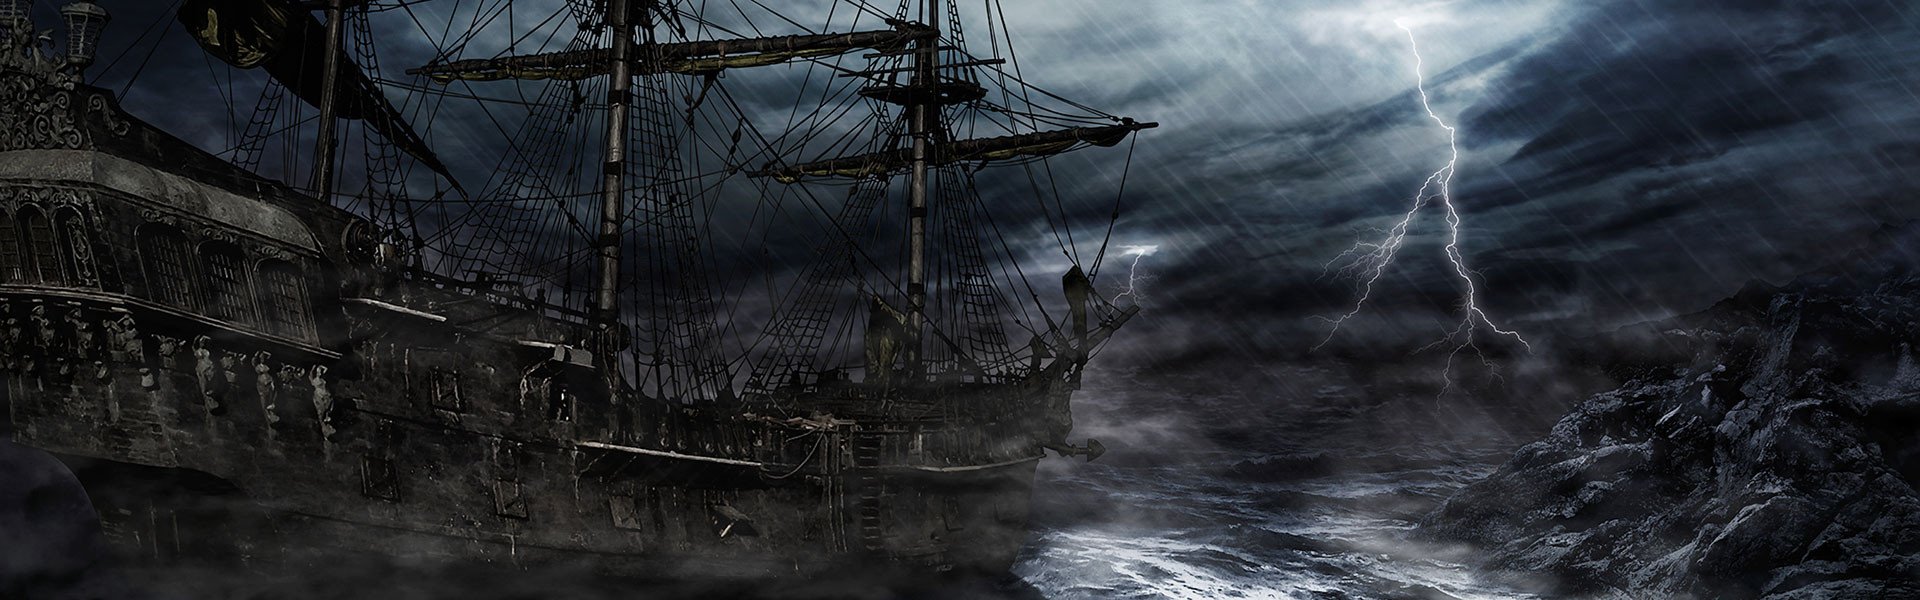 Палуба в тумане. Черная Жемчужина шторм. Летучий голландец корабль призрак. Пираты Карибского моря черная Жемчужина. Чёрная Жемчужина корабль шторм.